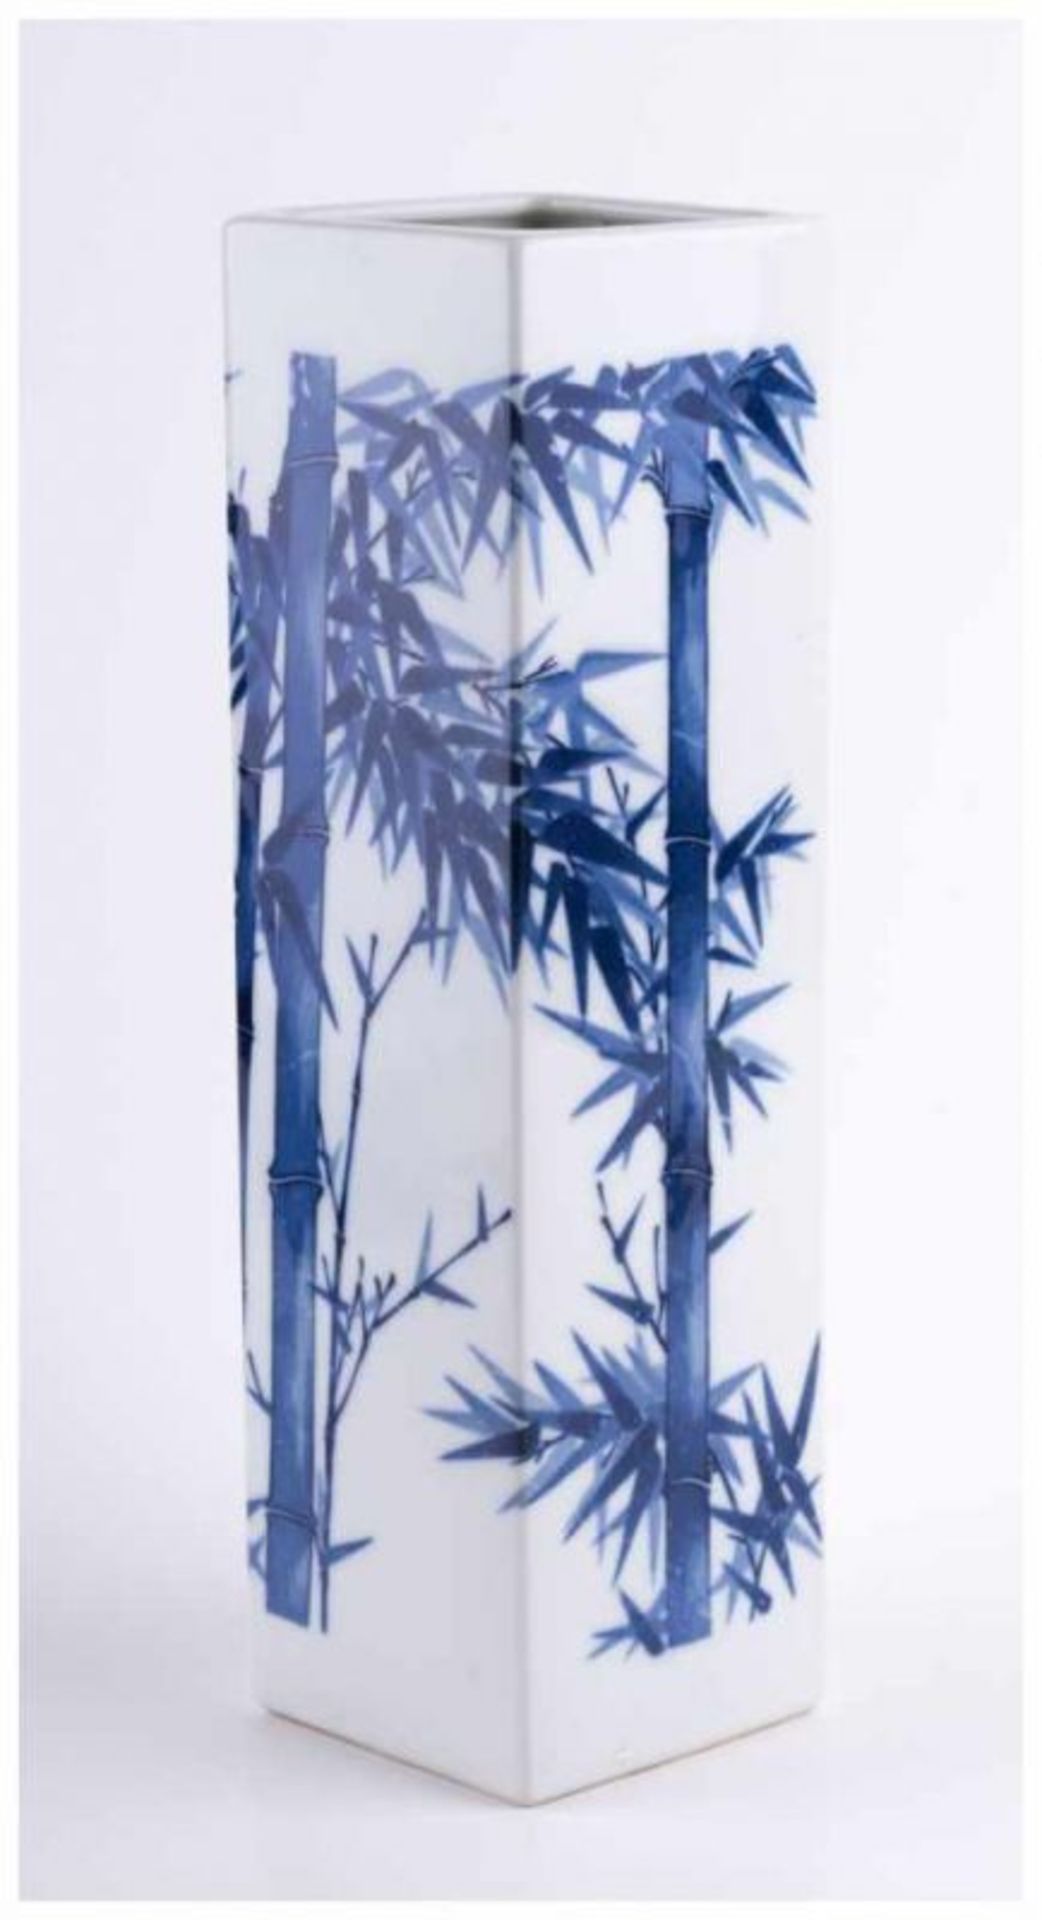 Vase Japan 19. Jhd. / Vase, Japan 19th century - Vierkantform, mit blau-weißem [...] - Bild 2 aus 8